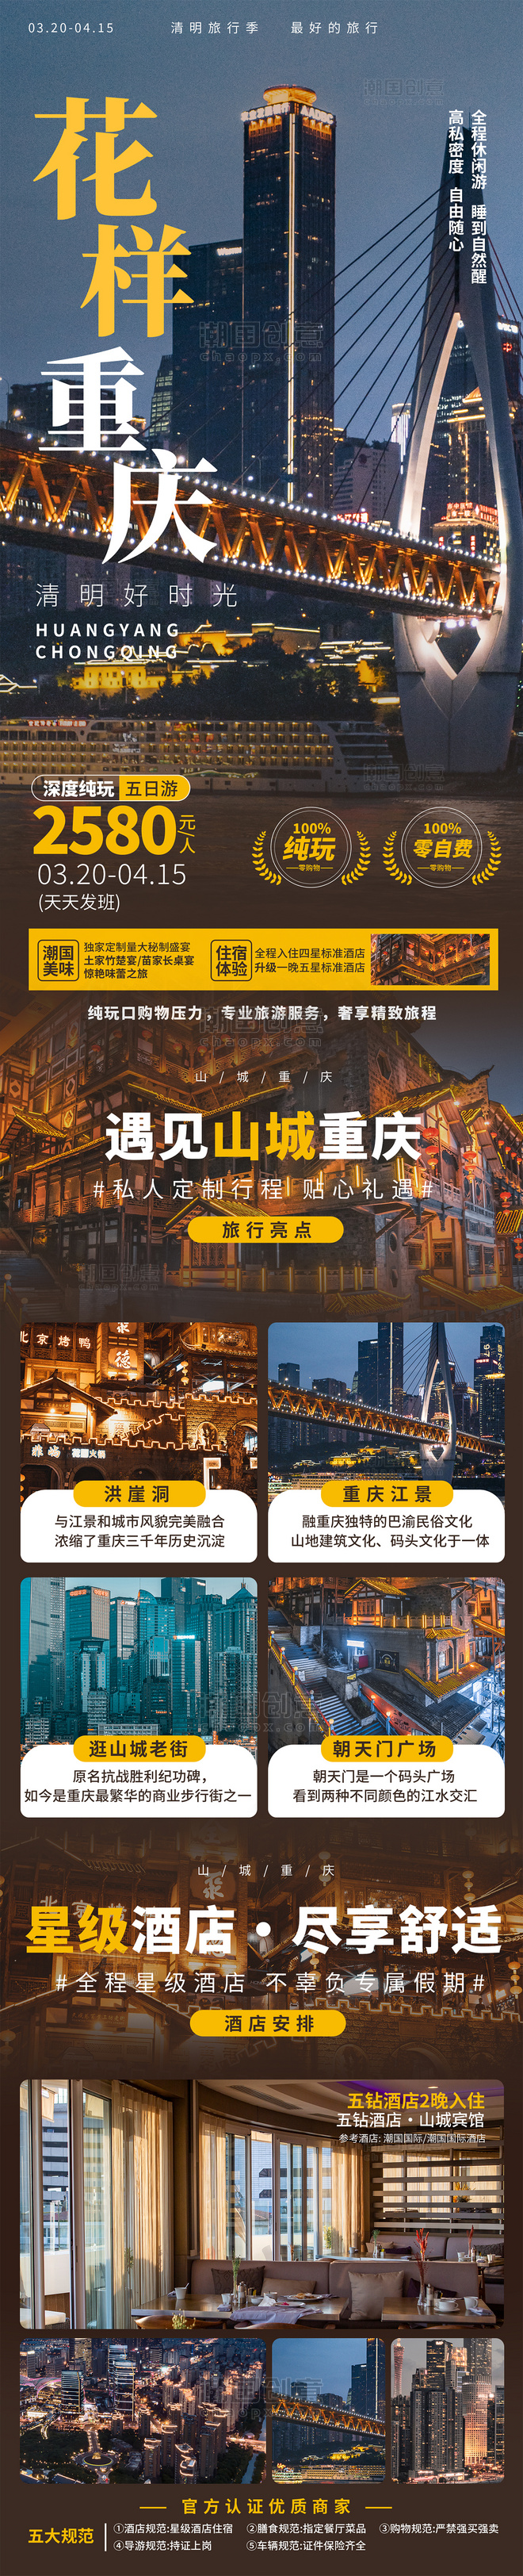 清明清明节重庆旅游旅行长图详情页设计